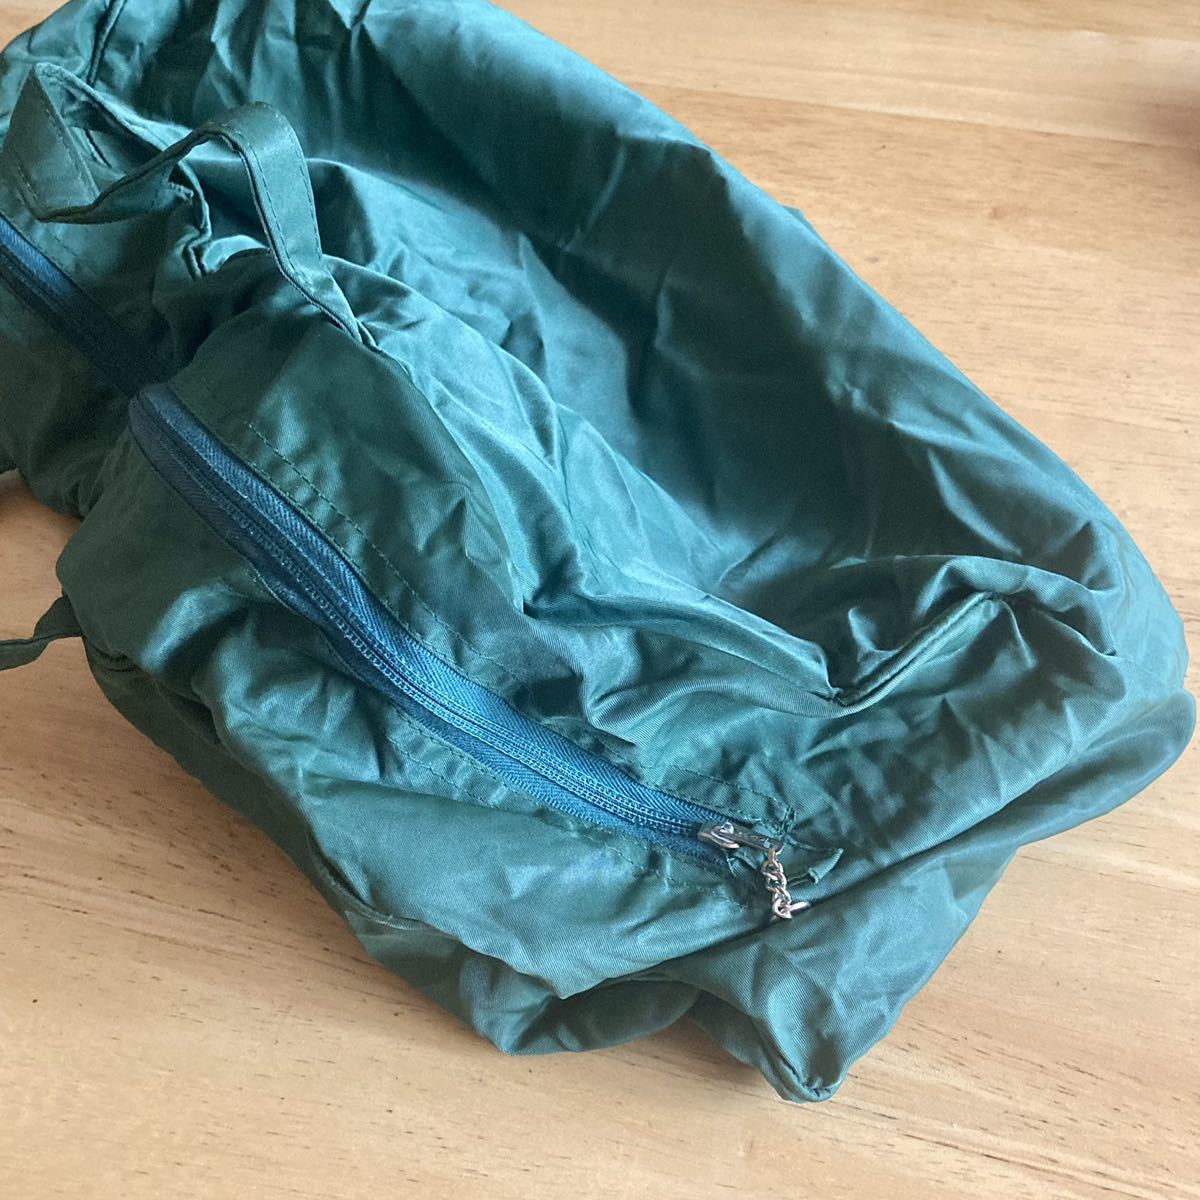  Showa Retro * сумка "Boston bag" * Toray * нейлон * портативный Magic * складной * легкий * эко-сумка * дорожная сумка зеленый * б/у 